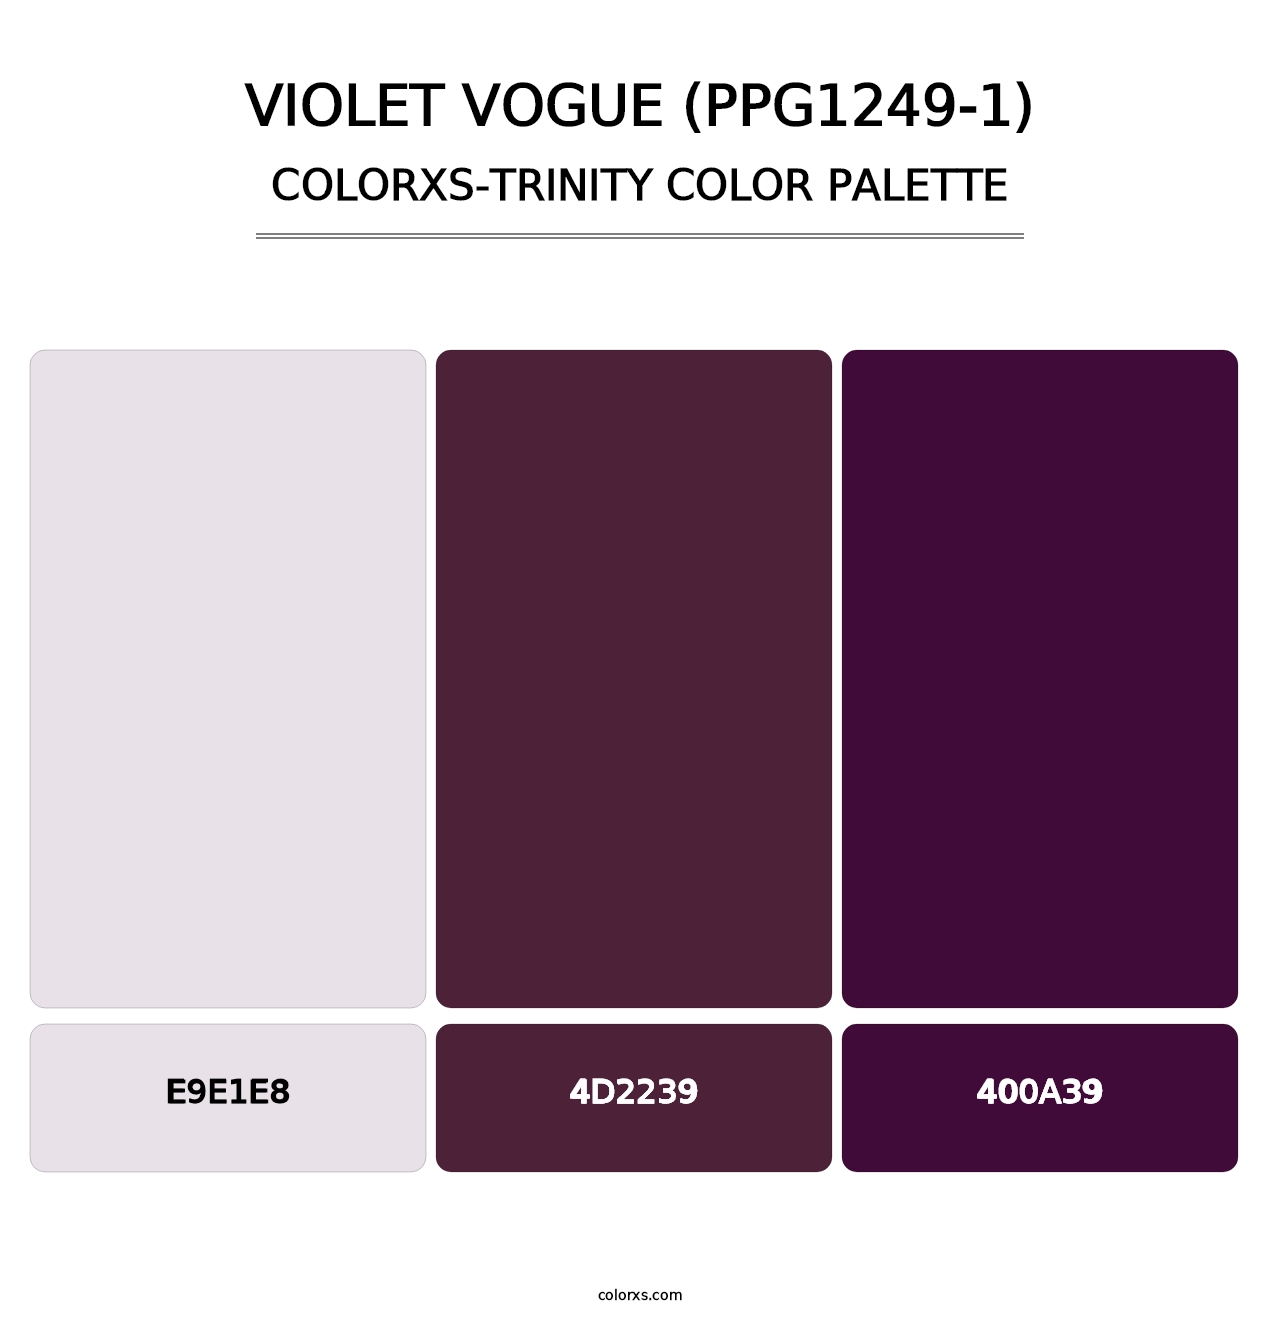 Violet Vogue (PPG1249-1) - Colorxs Trinity Palette